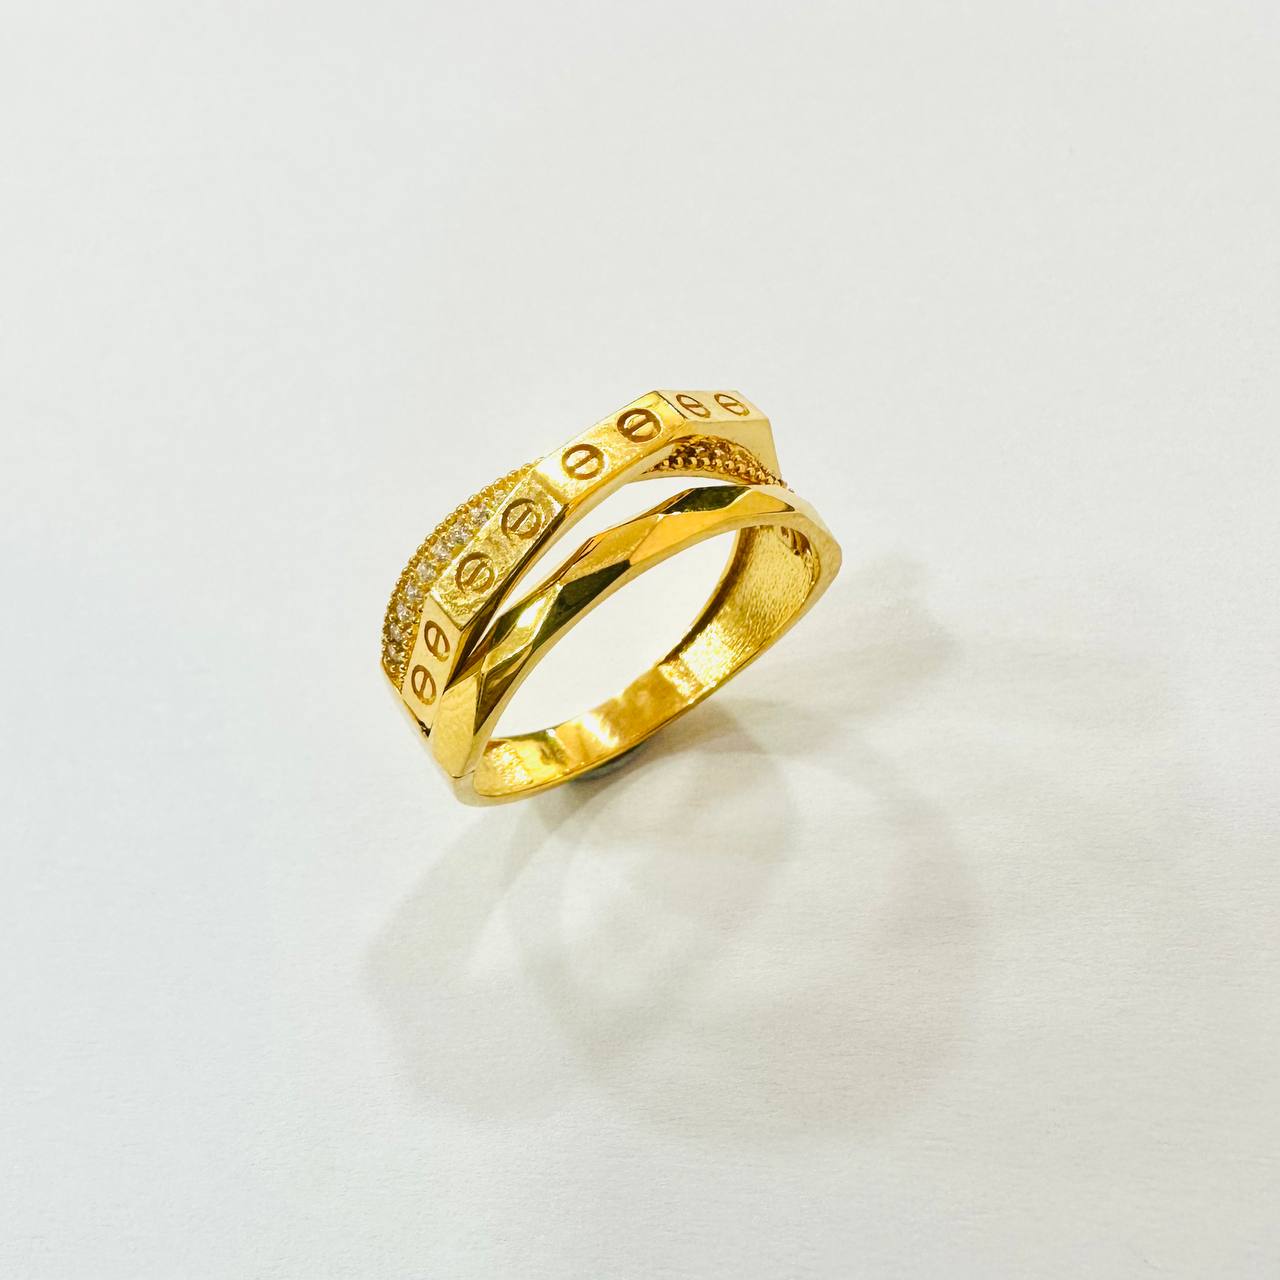 22k / 916 Gold C design Crystal Ring-916 gold-Best Gold Shop